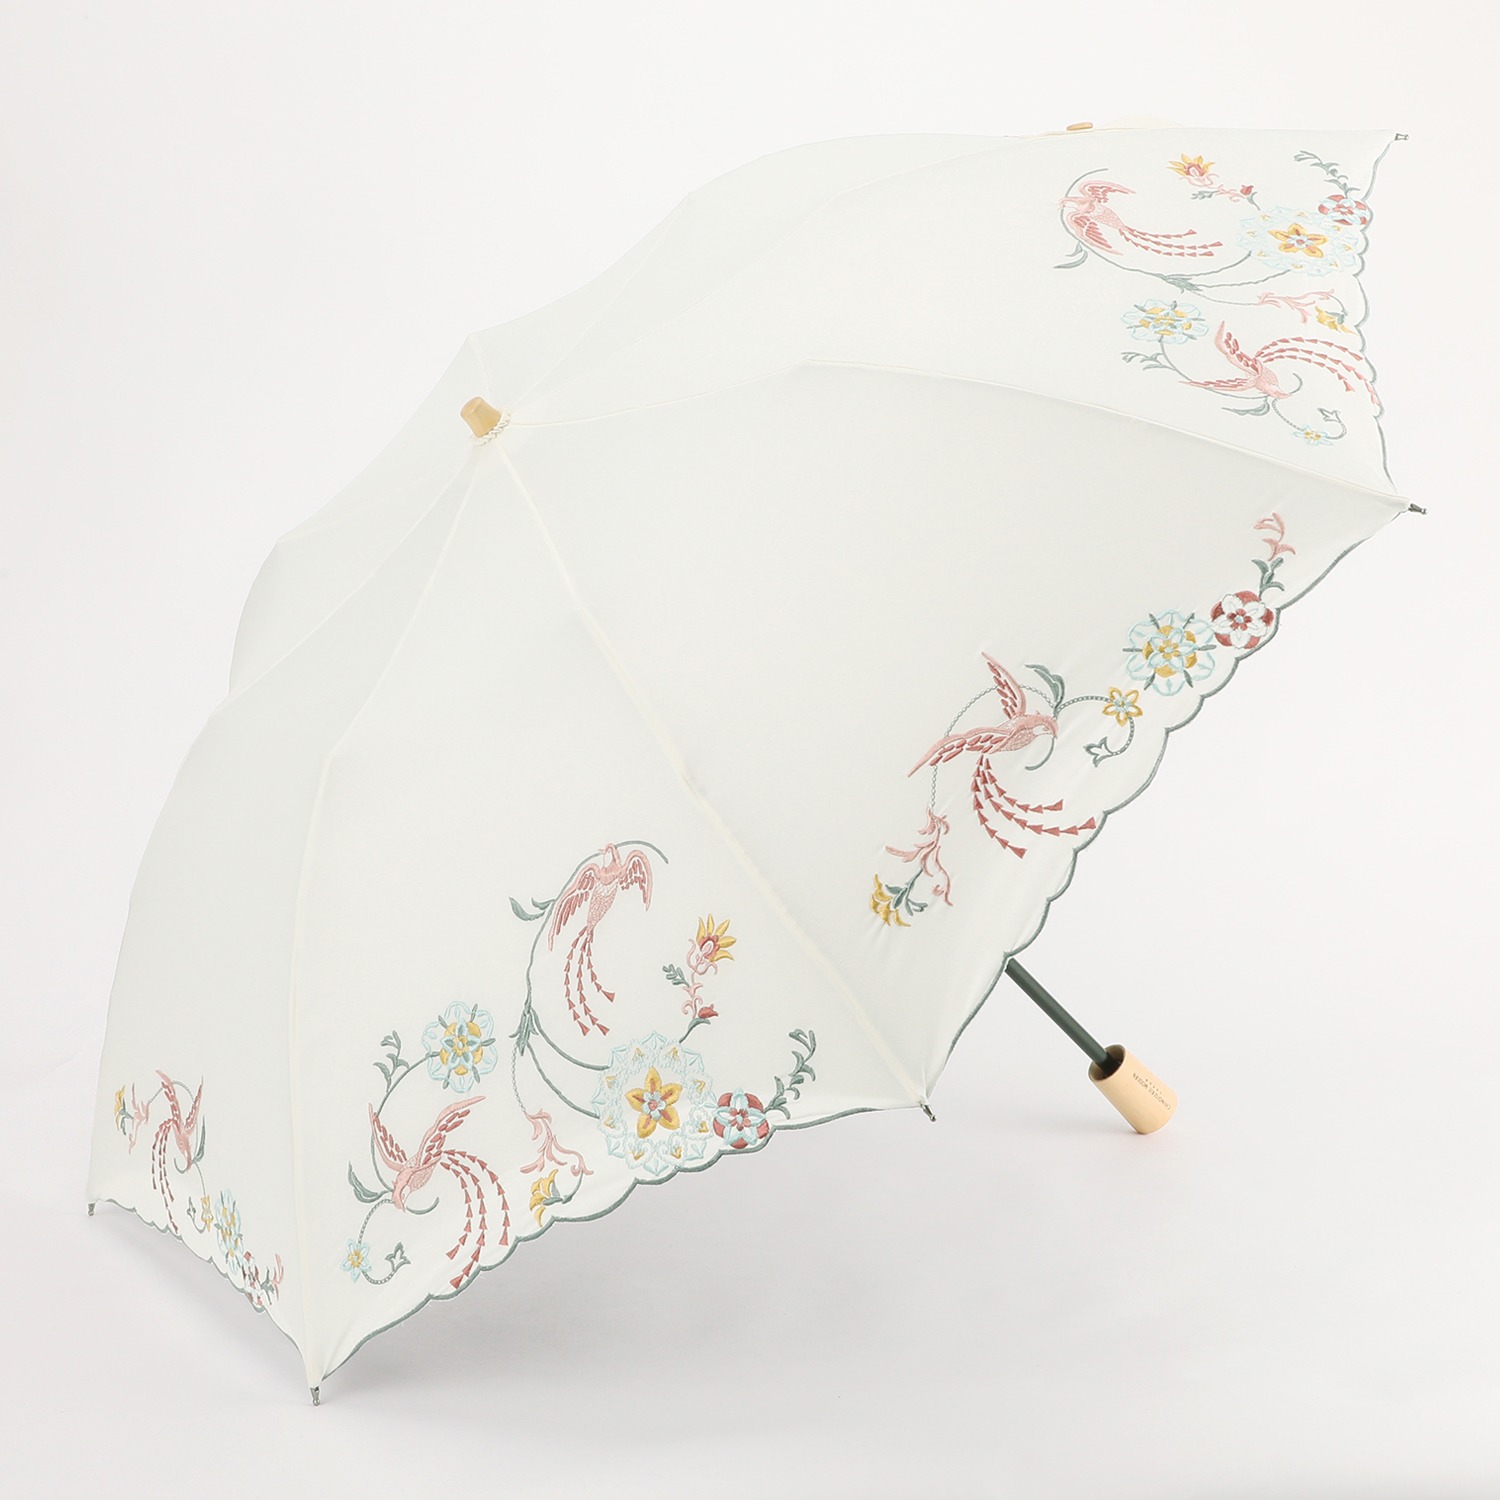 シノワズリーモダン かわず張り 刺しゅうデザイン 晴雨兼用折りたたみ傘